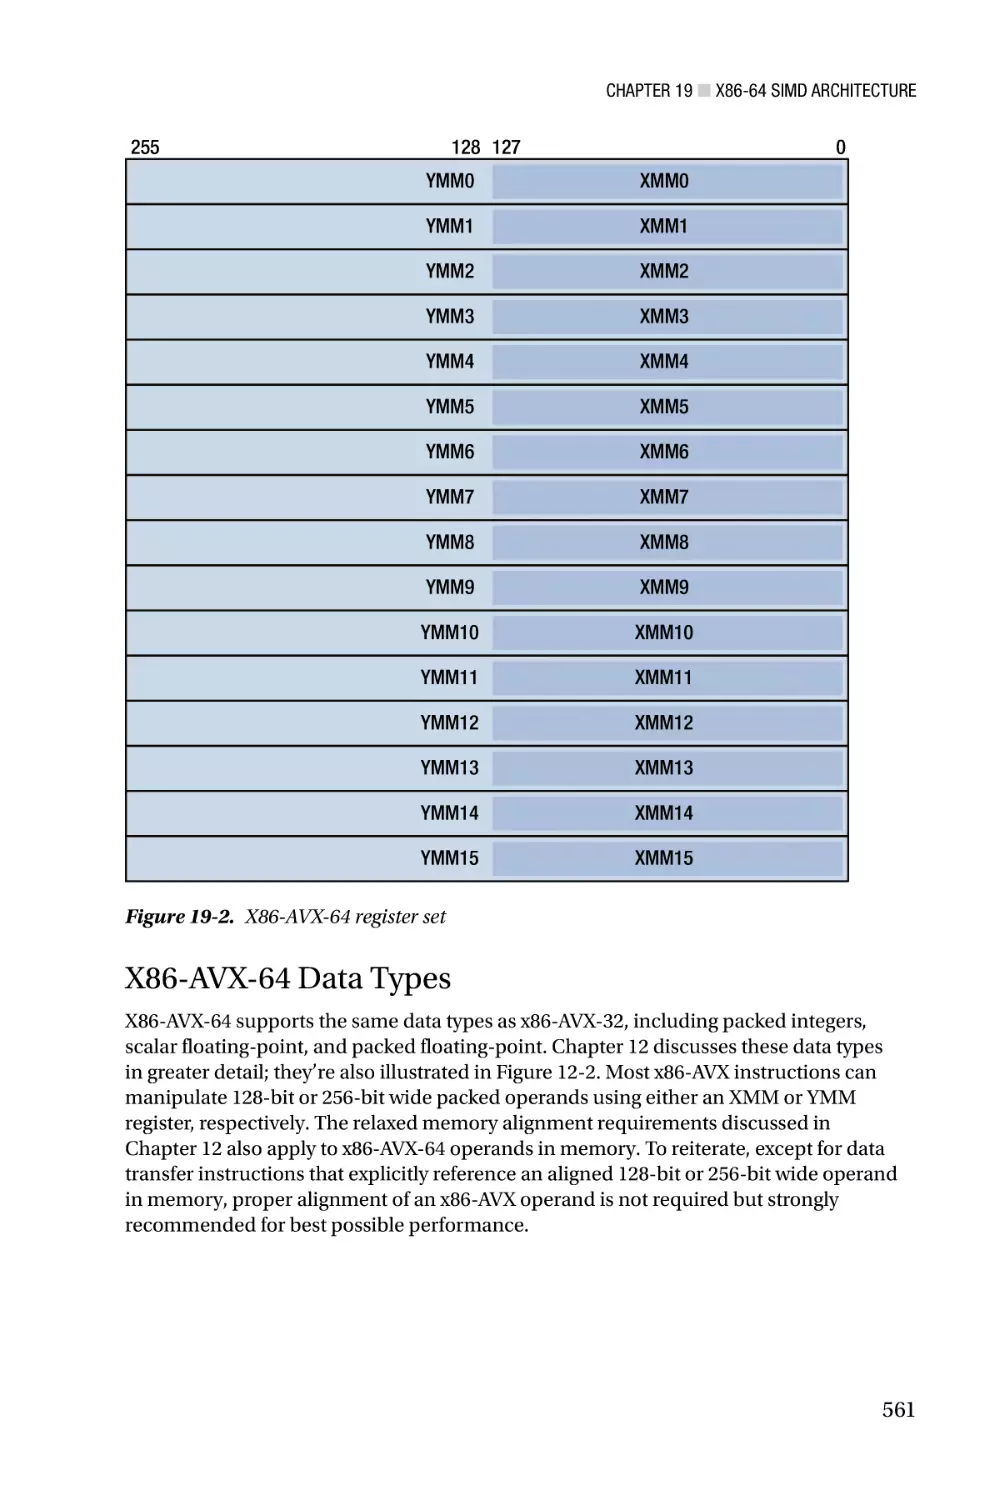 X86-AVX-64 Data Types